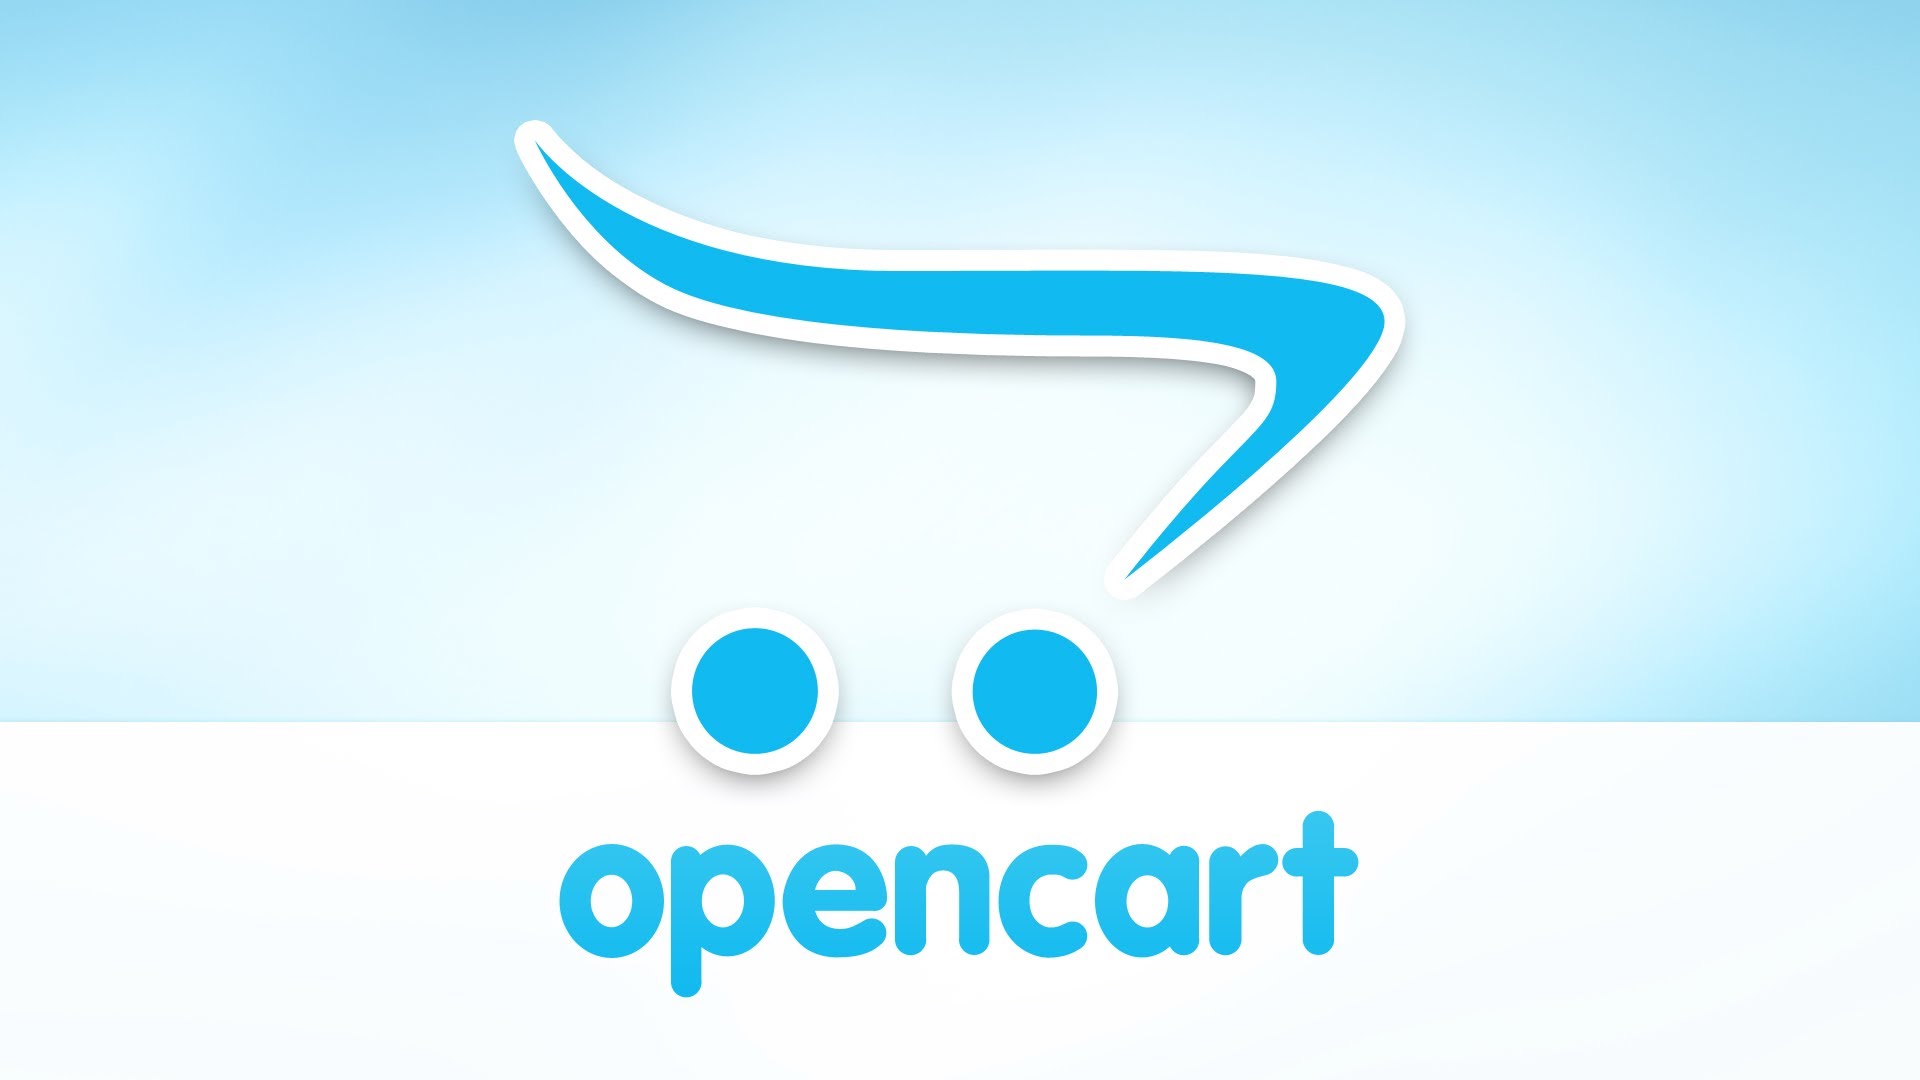 Opencart là gì? Những tính năng nổi bật của Opencart so với WordPress - WEBICO BLOG